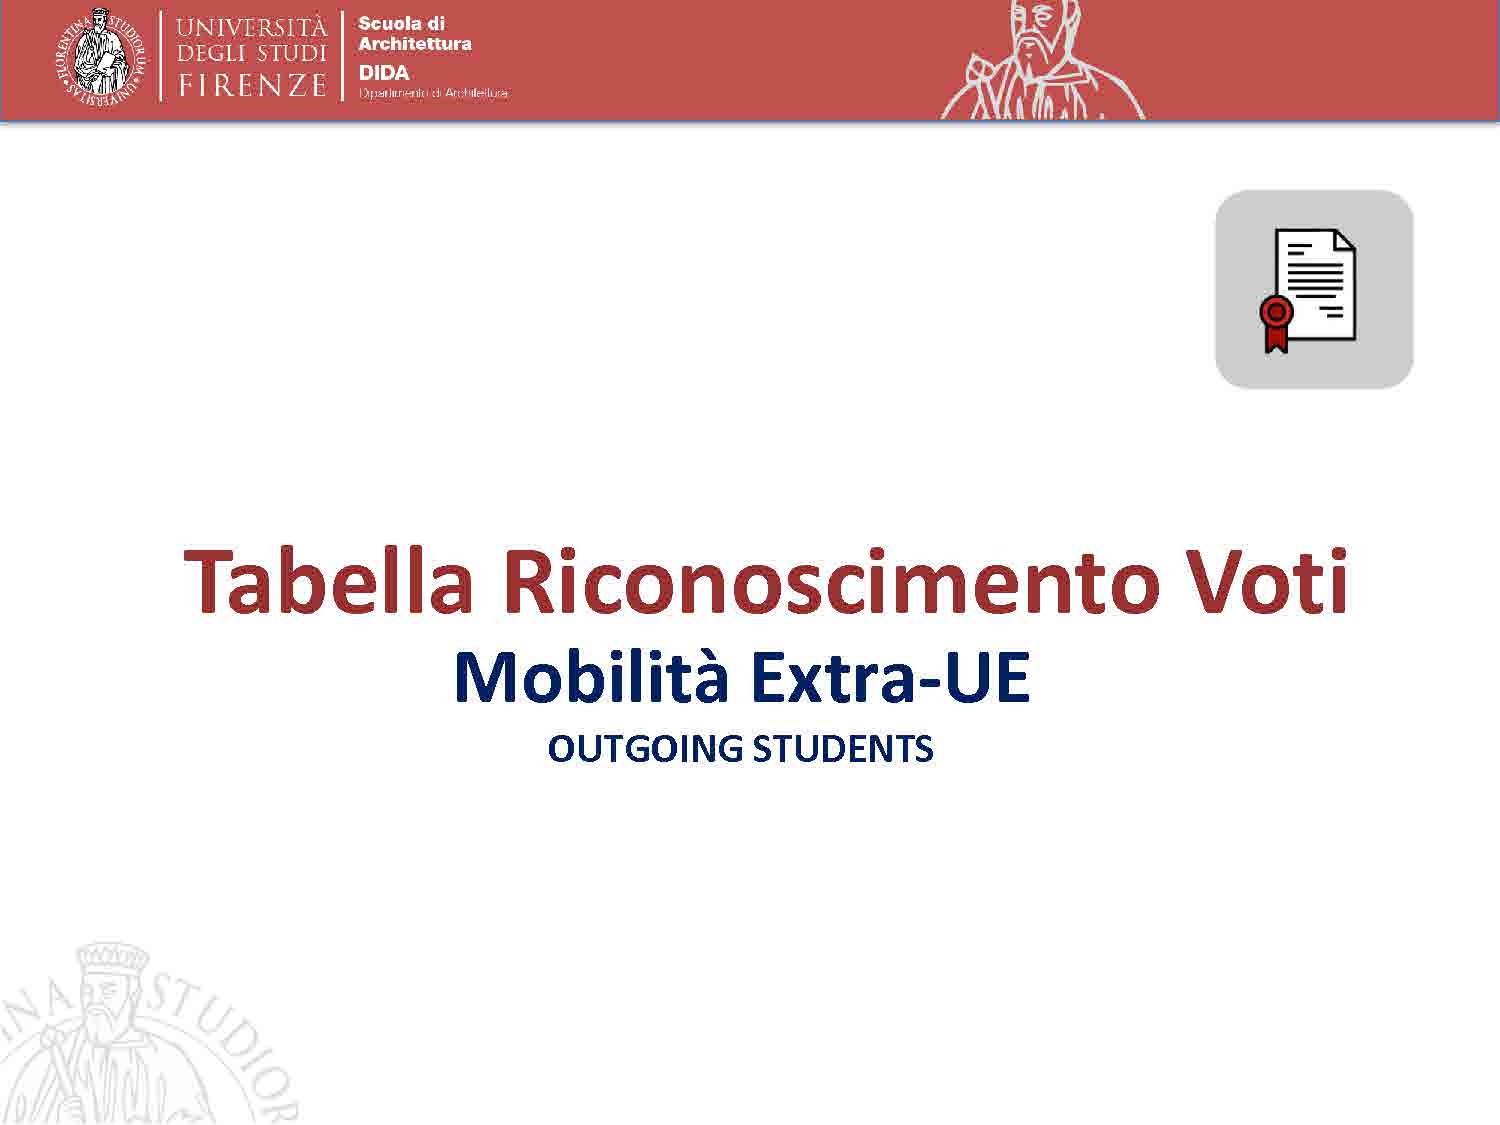 Anteprima_Tabella_Riconoscimenti_Voti_Extra_UE.jpg